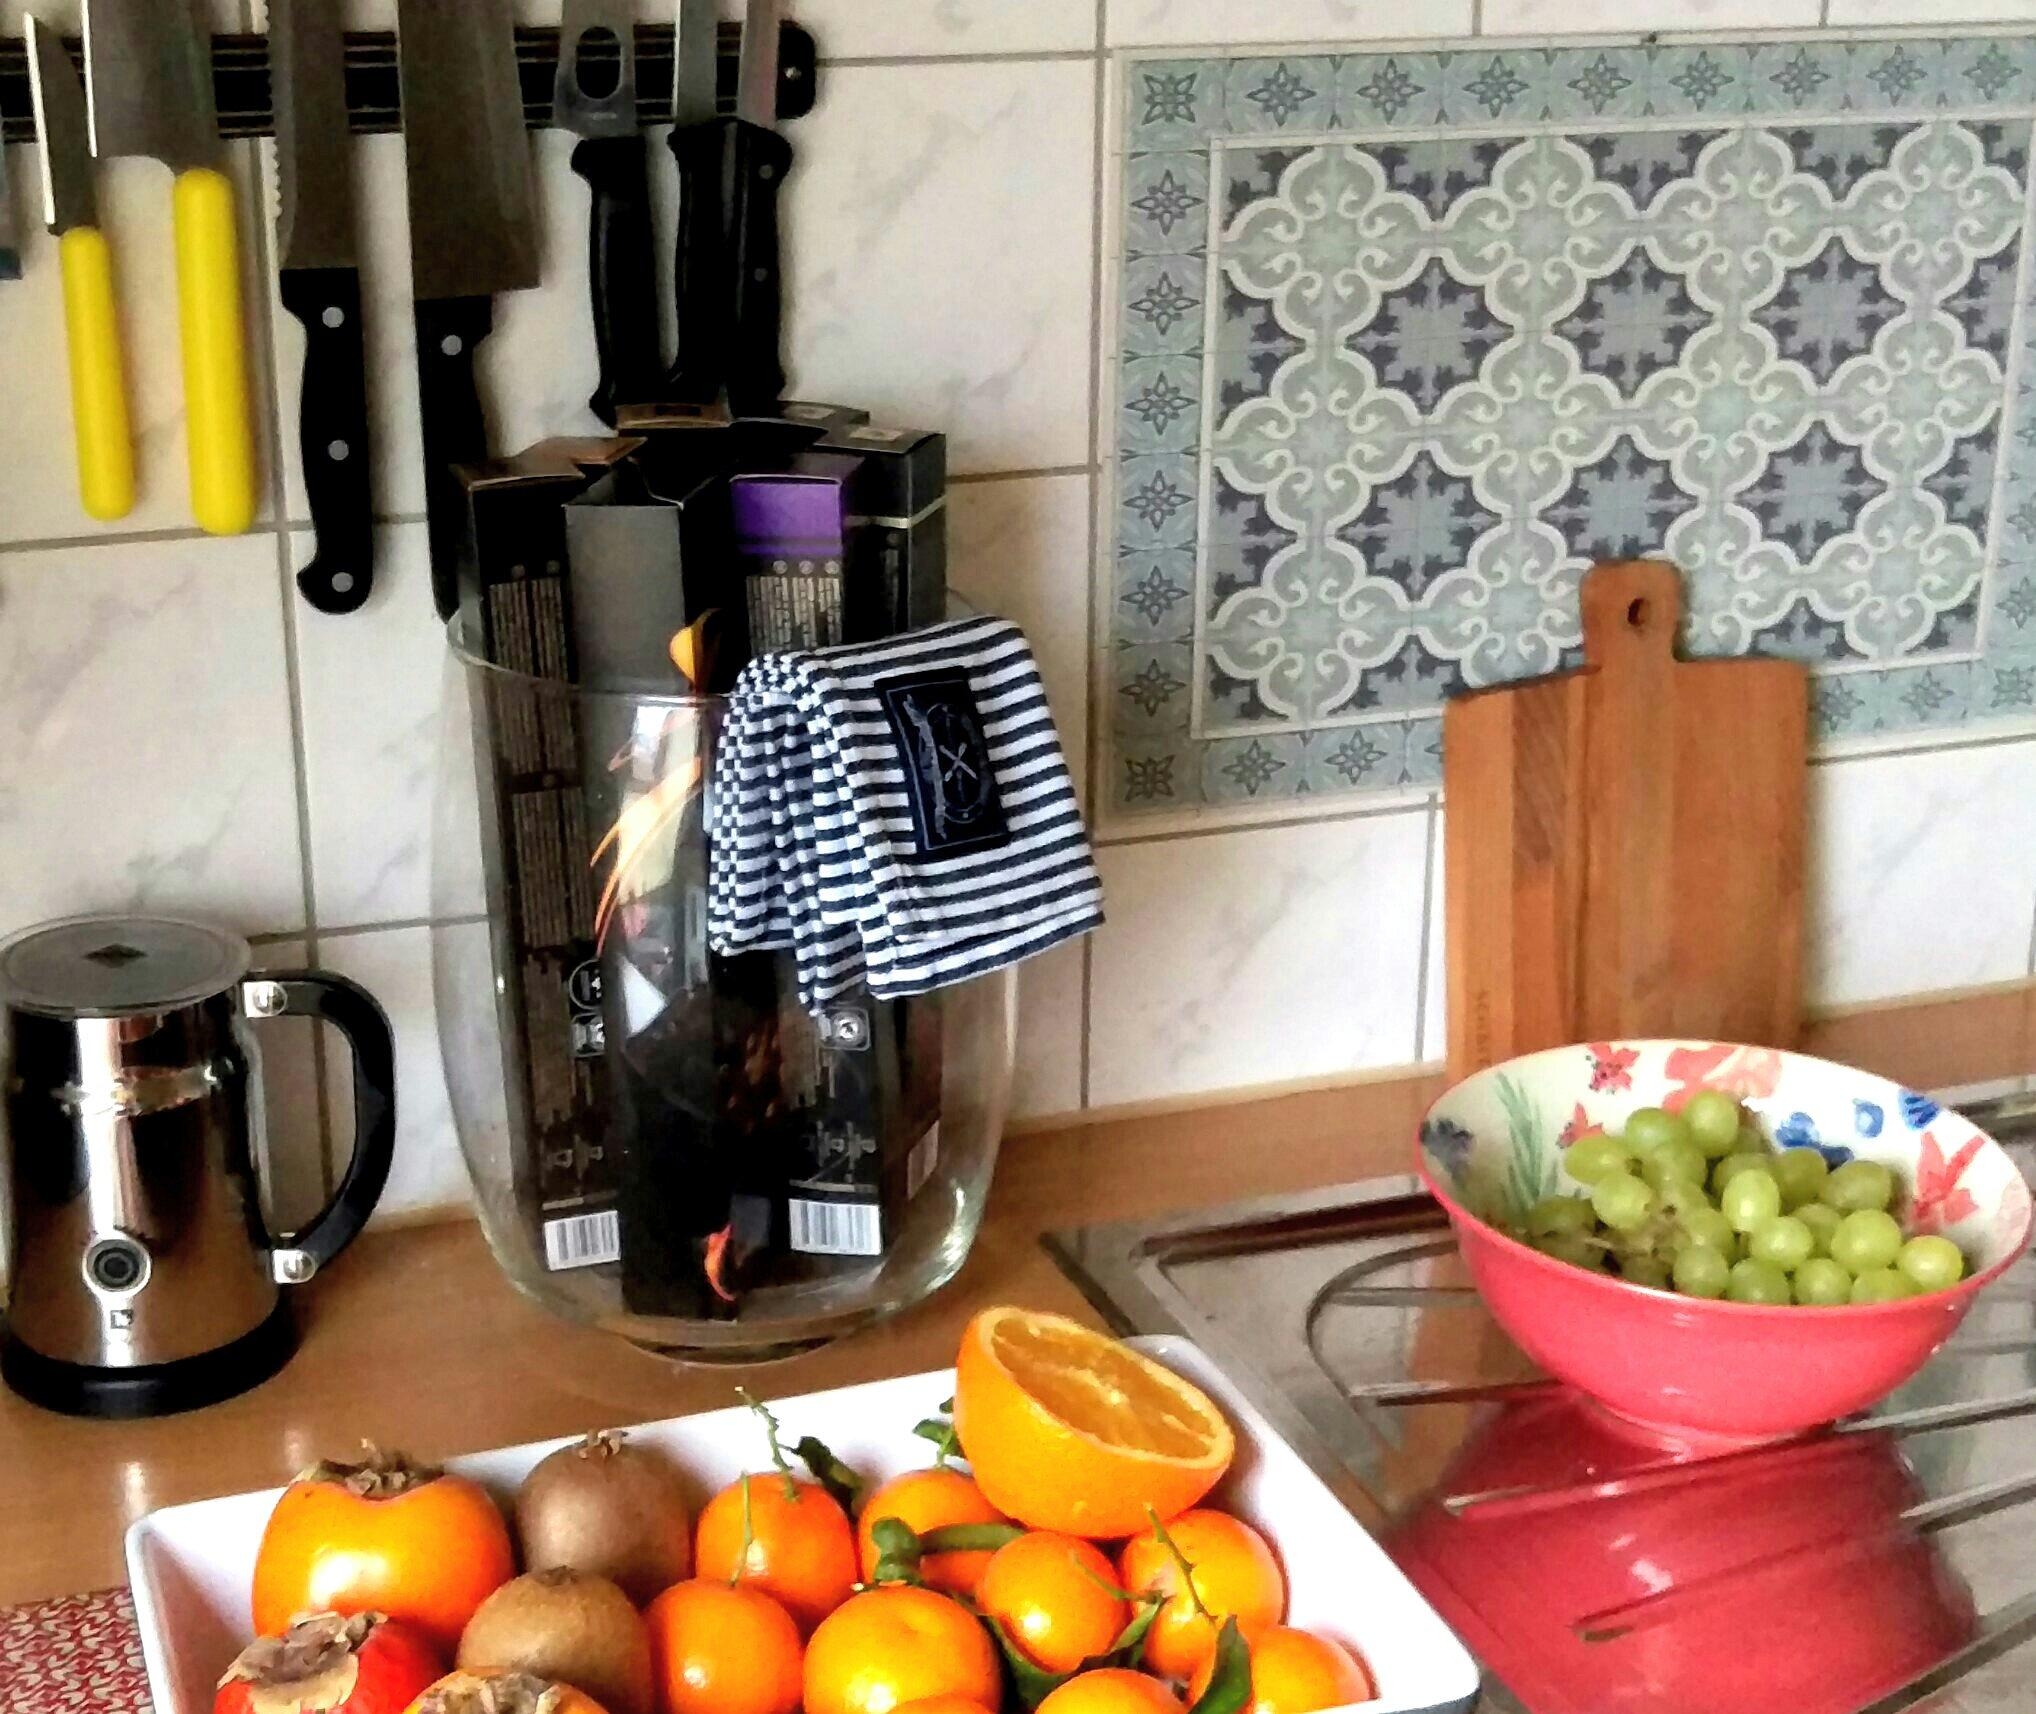 jetzt erst mal wieder (fast -:))
nur Obst
#kitchen #obst #küche #deko